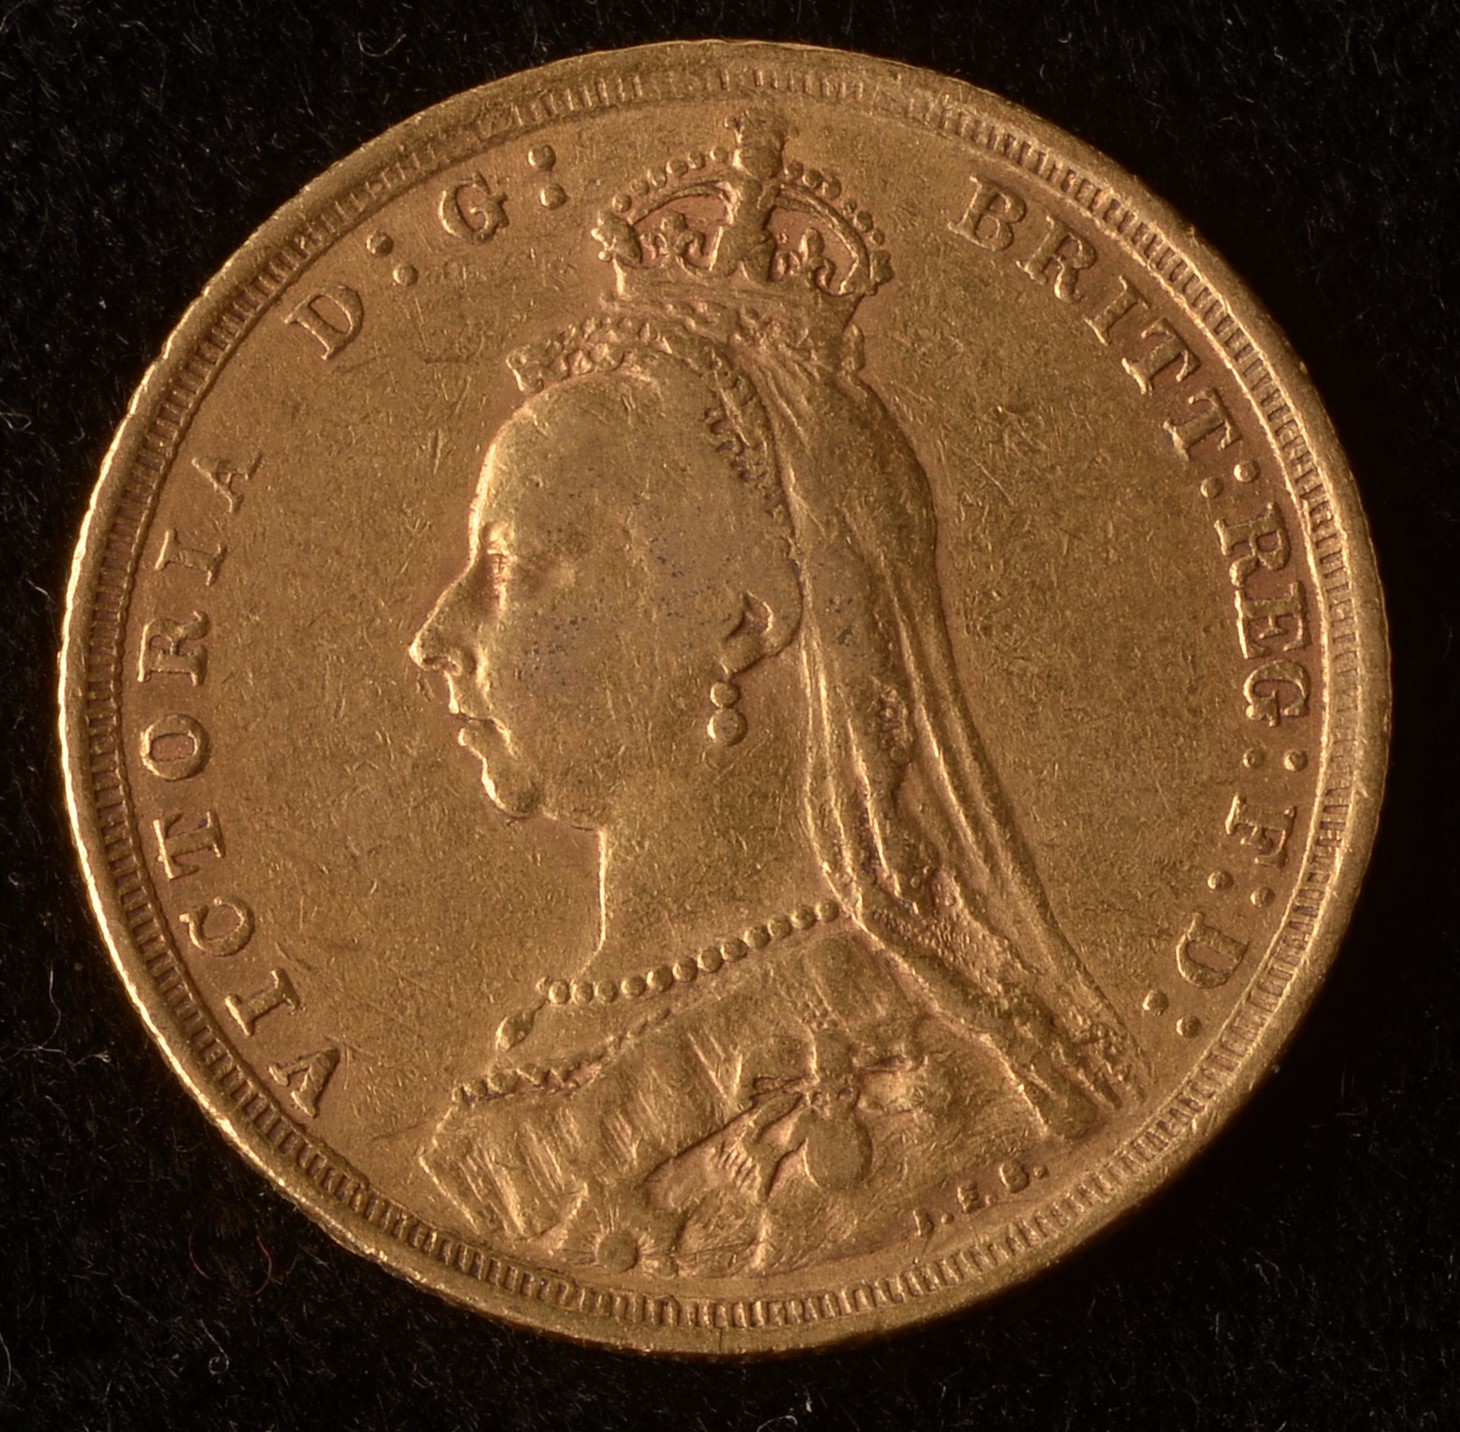 Queen Victoria gold sovereign